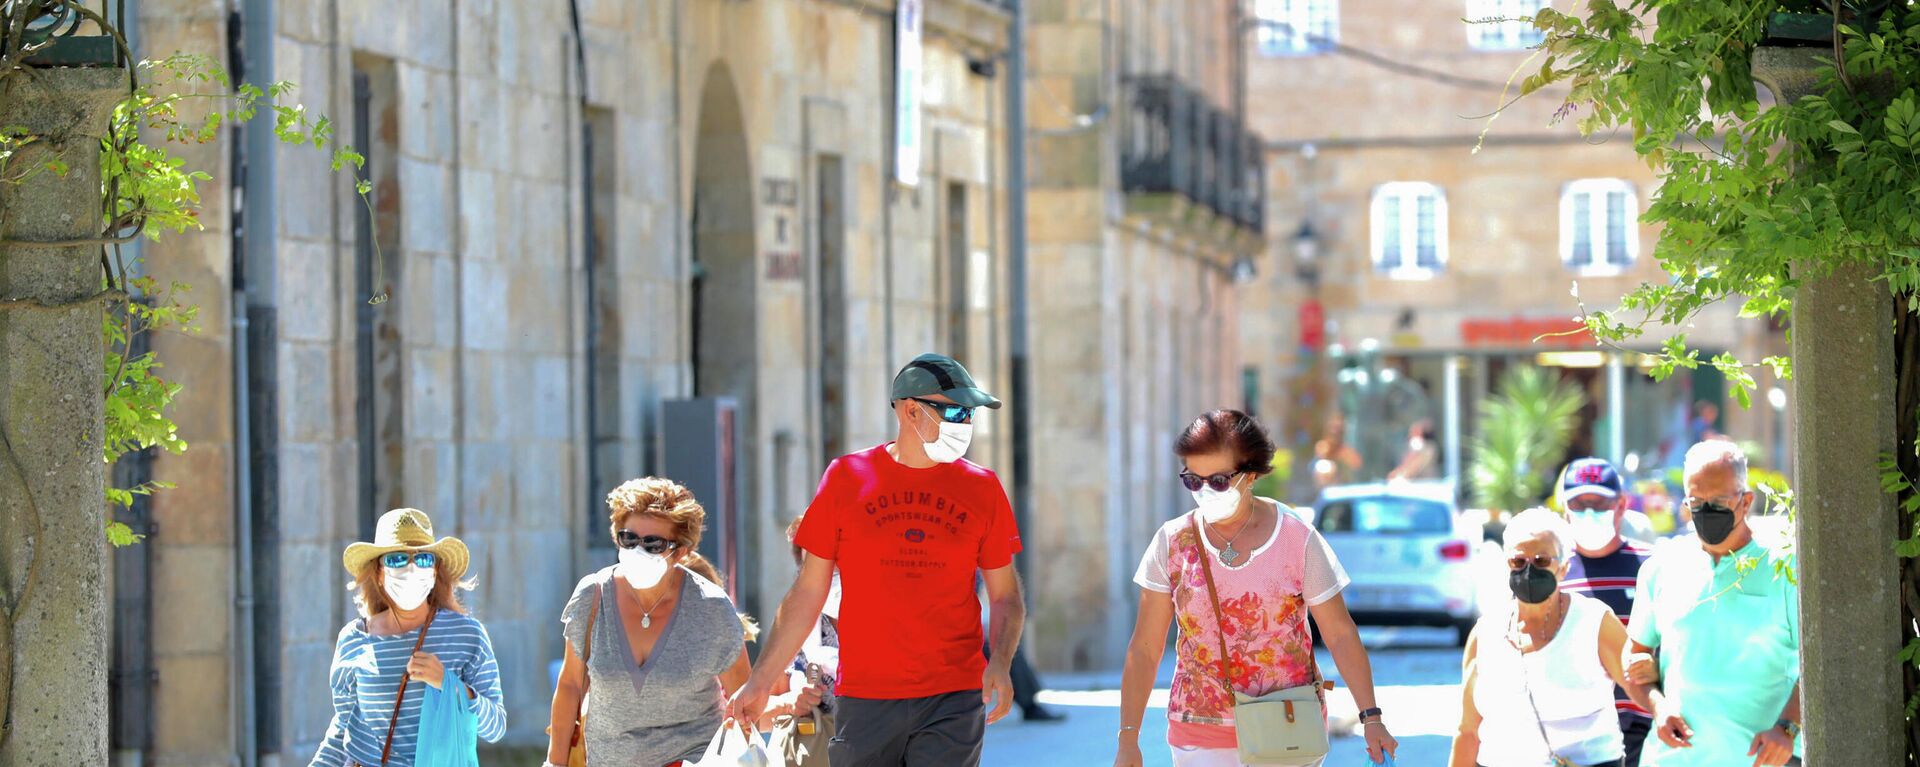 Un grupo de personas pasea por el recinto donde se suele celebrar la Festa do Albariño, a 28 de julio de 2021, en Cambados, Pontevedra, Galicia, (España) - Sputnik Mundo, 1920, 04.08.2021